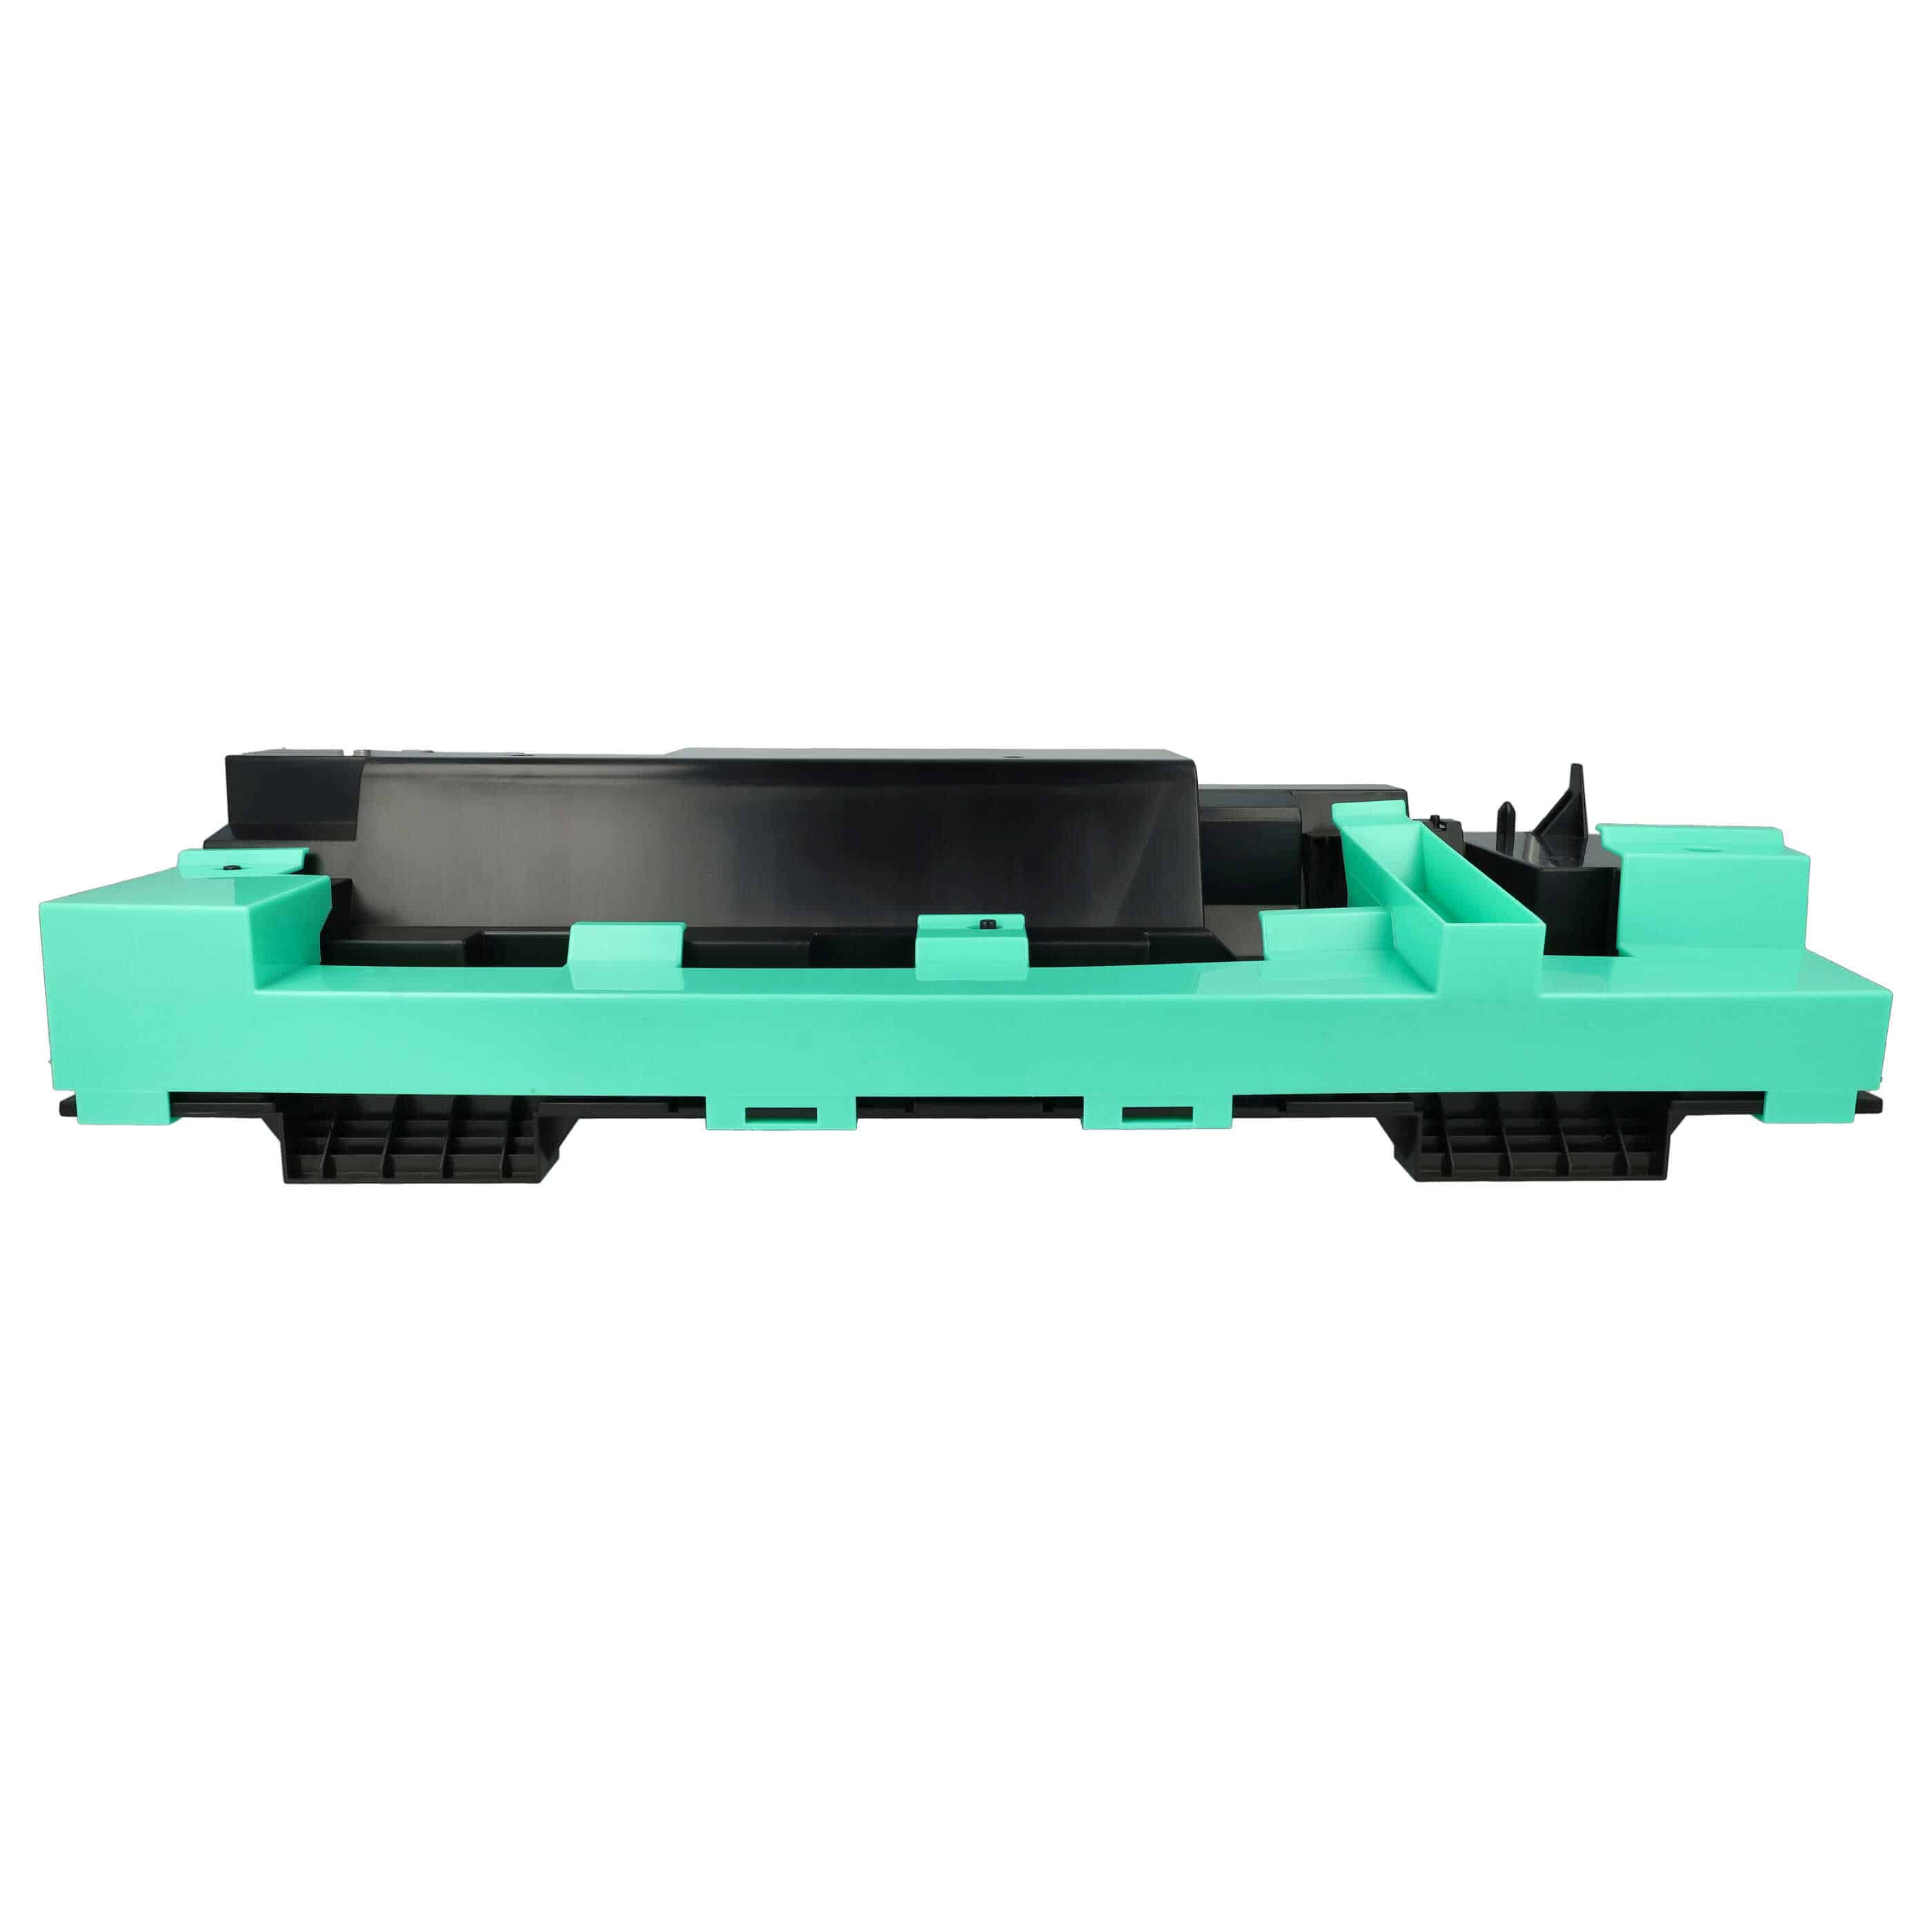 Collecteur de toner remplace Konica Minolta 1008661 pour imprimante laser Olivetti D-Color MF 551 - noir